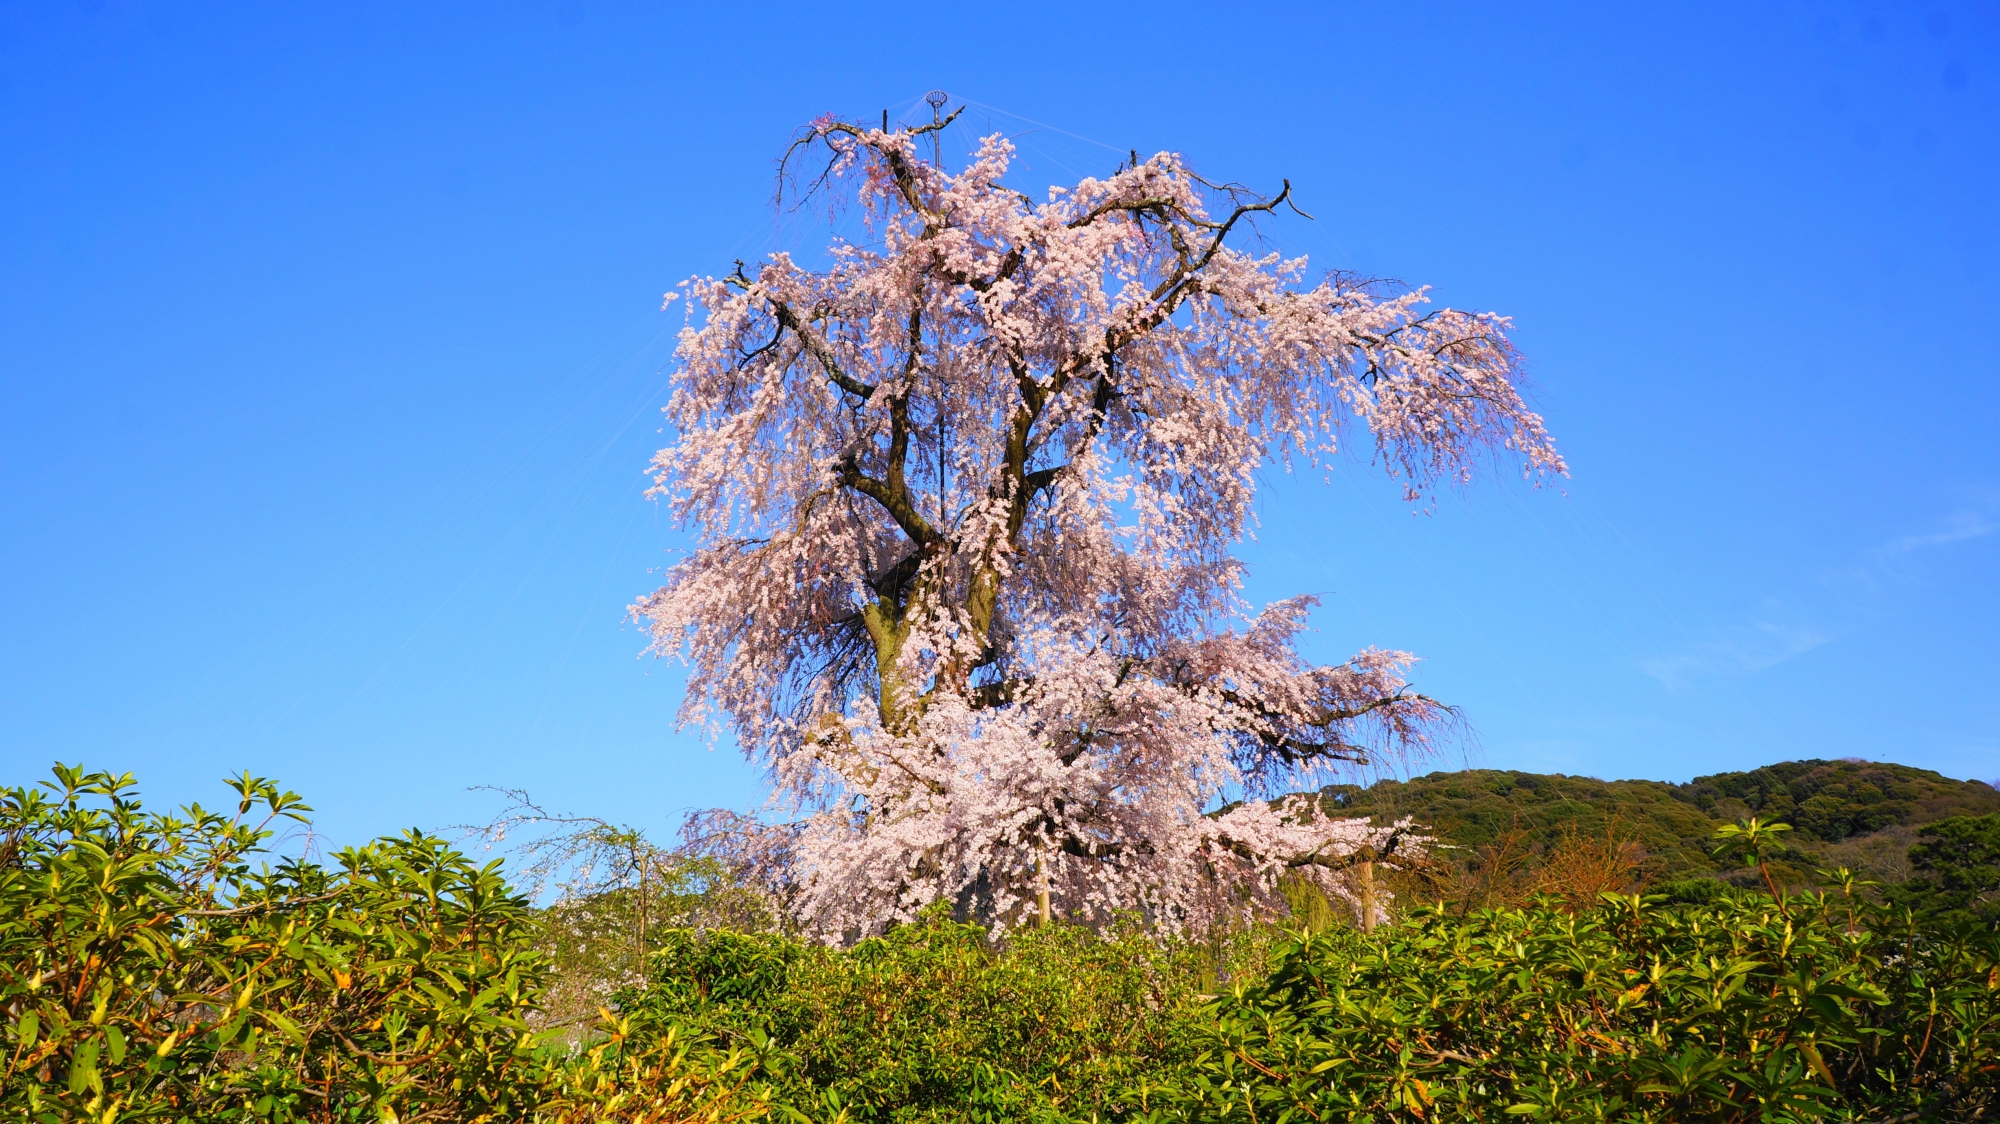 春の円山公園では圧倒的な存在感を放つ祇園しだれ桜